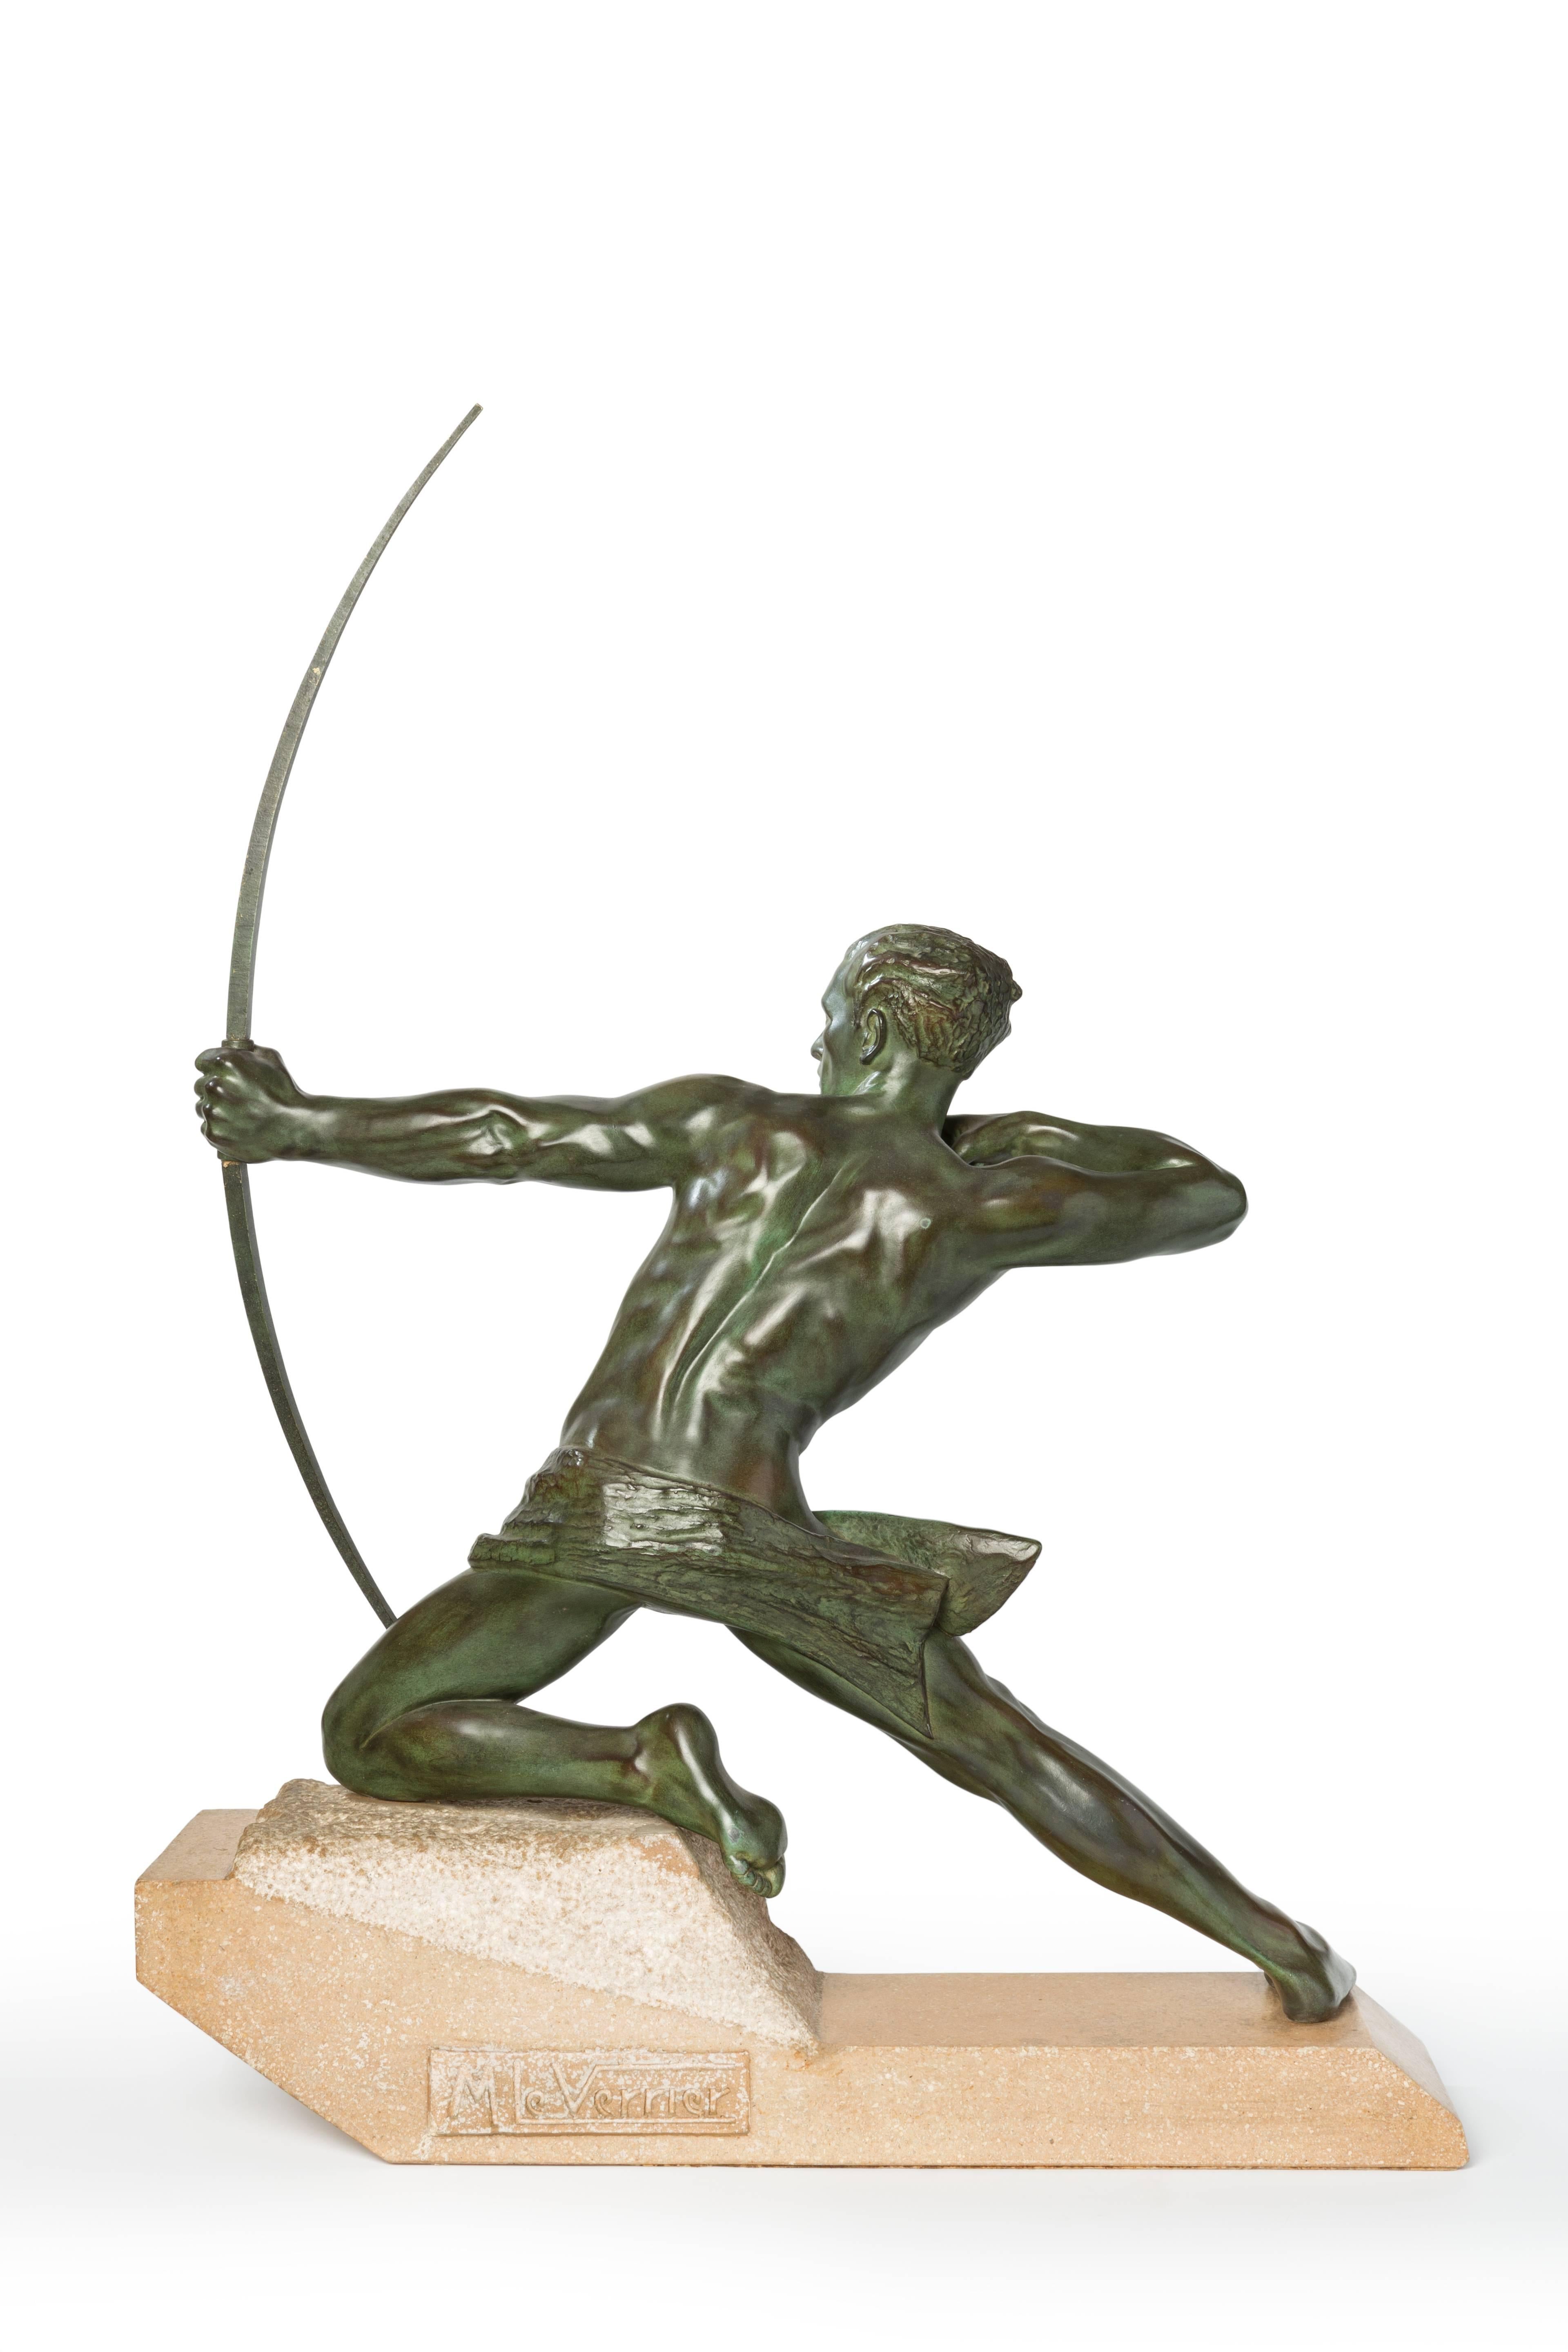 Französische Art-Déco-Skulptur von Max Le Verrier ( 1891-1973 ). Bronze grün patiniert auf Granitsockel. Auf dem Sockel signiert: M. Le Verrier.
Abmessungen: Höhe: 76 cm ( 29.92 in ), Breite: 57 cm ( 22.44 in ), Tiefe: 15,5 cm ( 6.1 in )